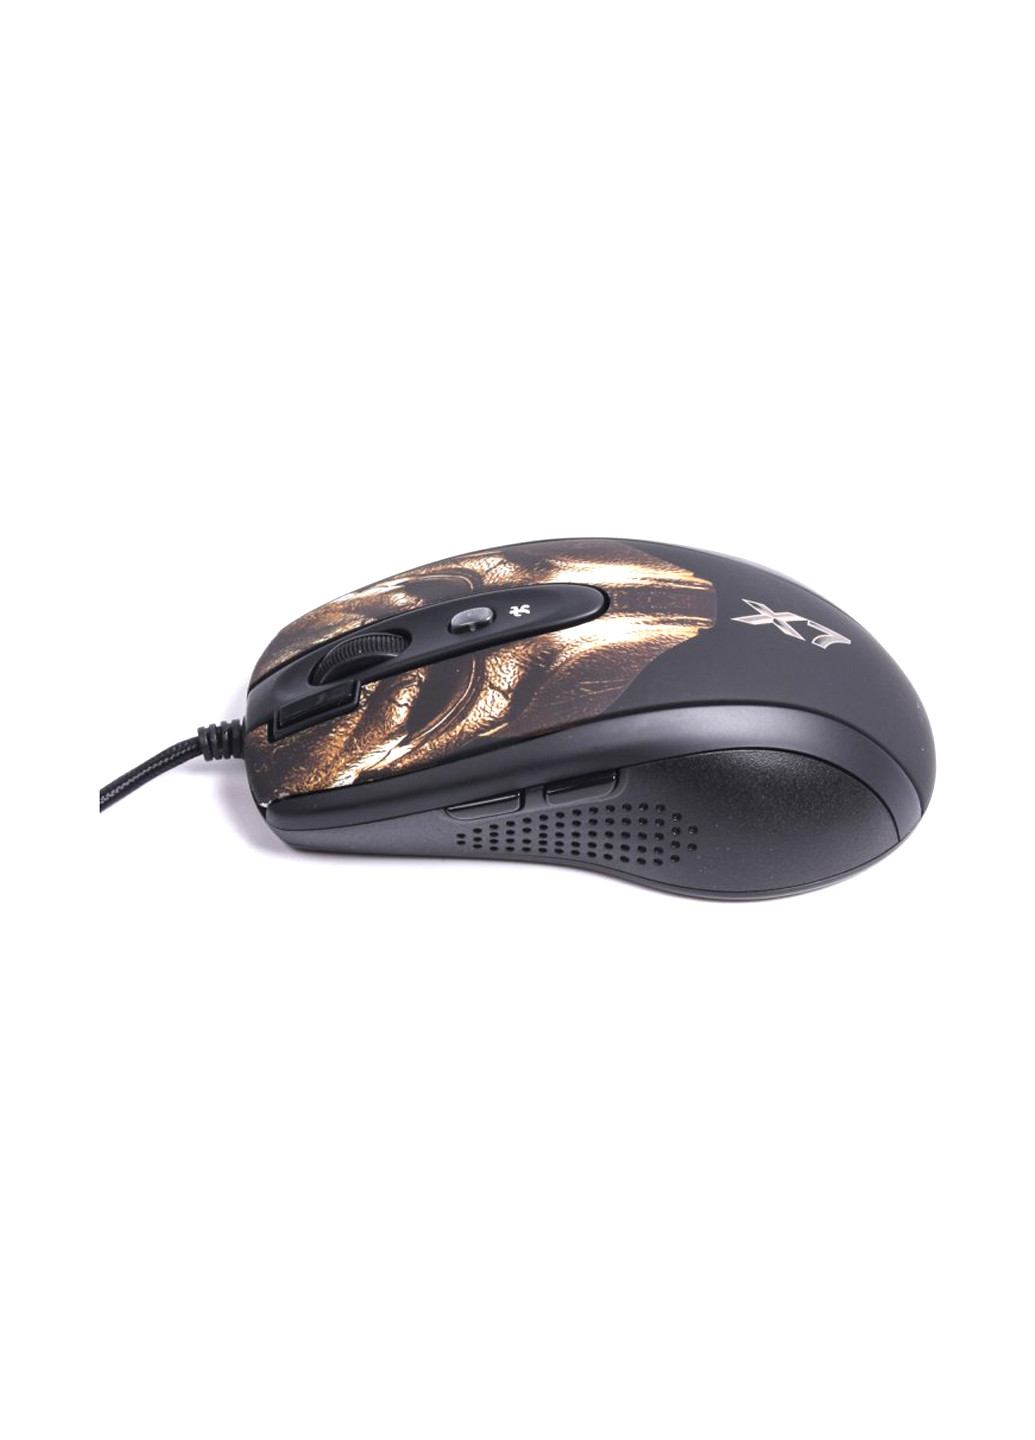 Мышь игровая A4Tech xl-750bh usb (bronze) (130792282)